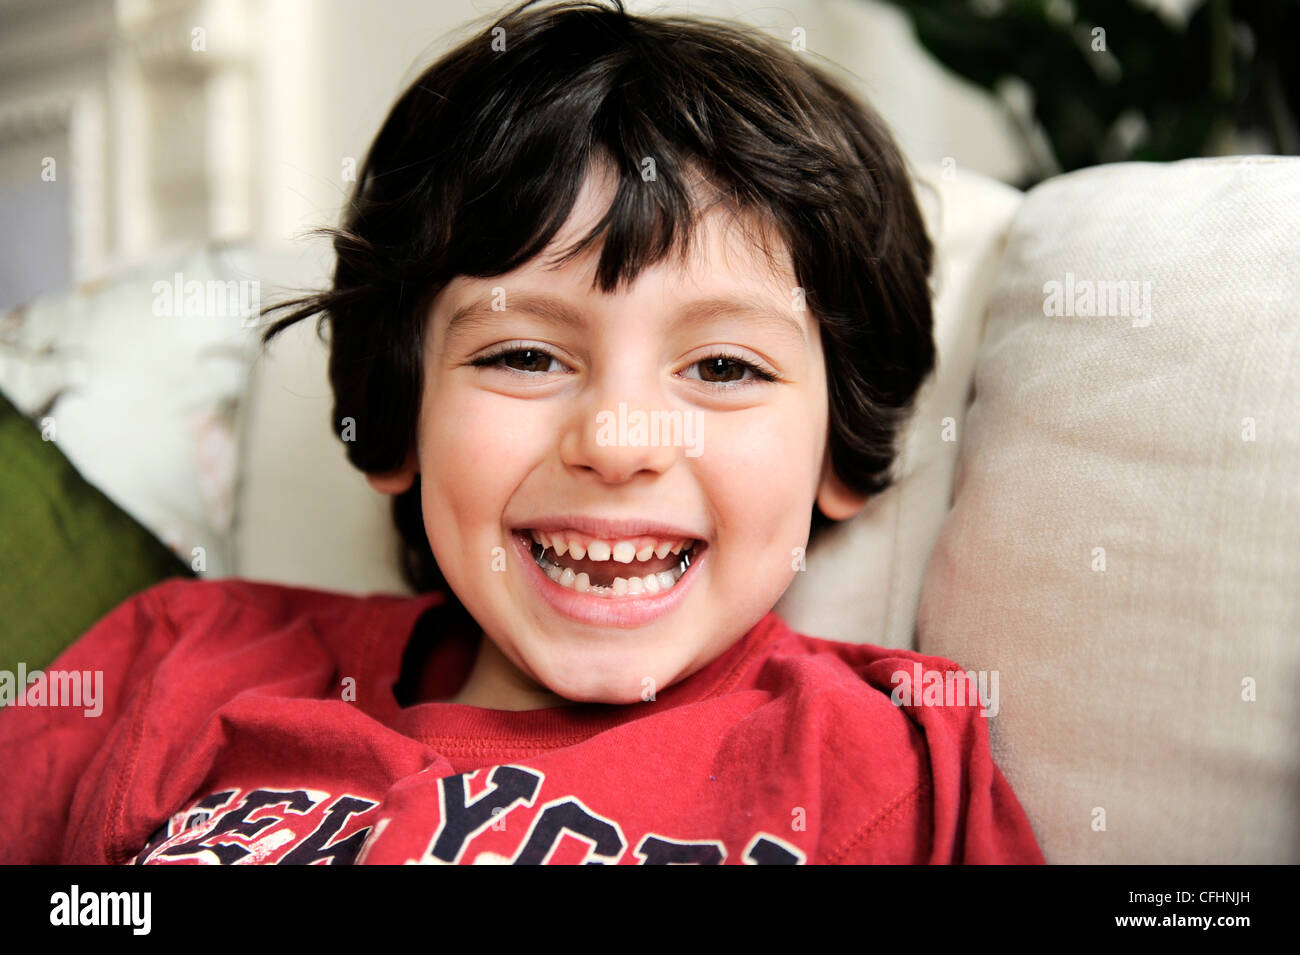 Spazio tra i dentelli - 6 anno vecchio ragazzo sorridendo dopo dente cade fuori Foto Stock